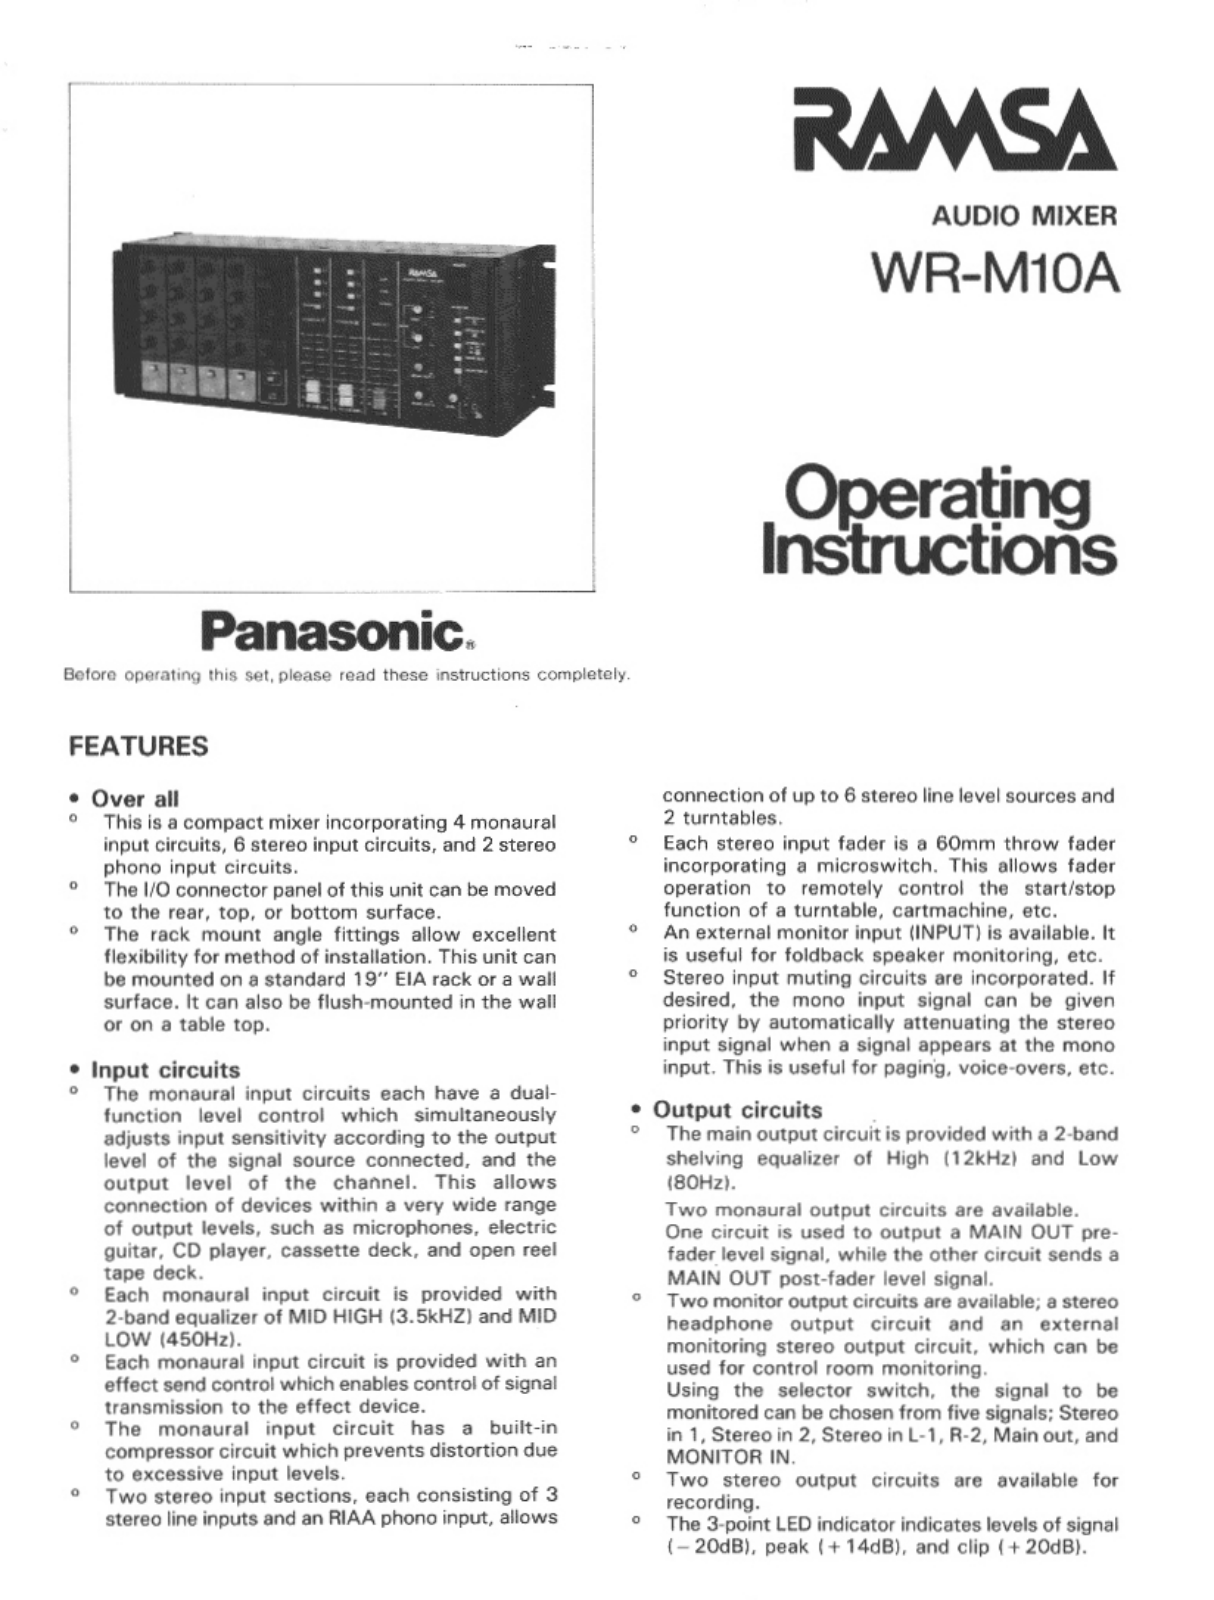 Panasonic wr-m10a Operation Manual